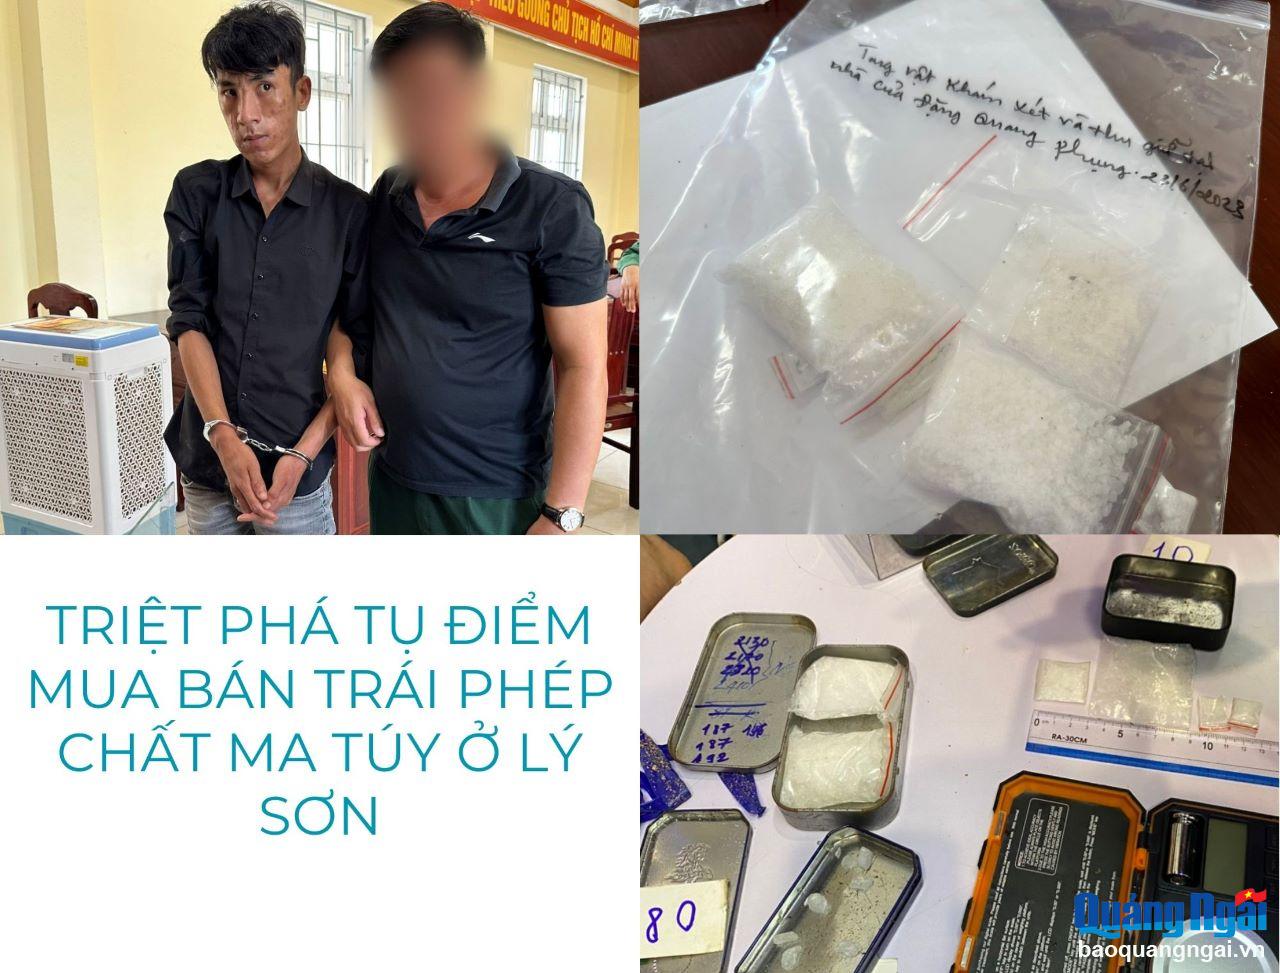 Video: Triệt phá tụ điểm mua bán trái phép chất ma túy ở Lý Sơn